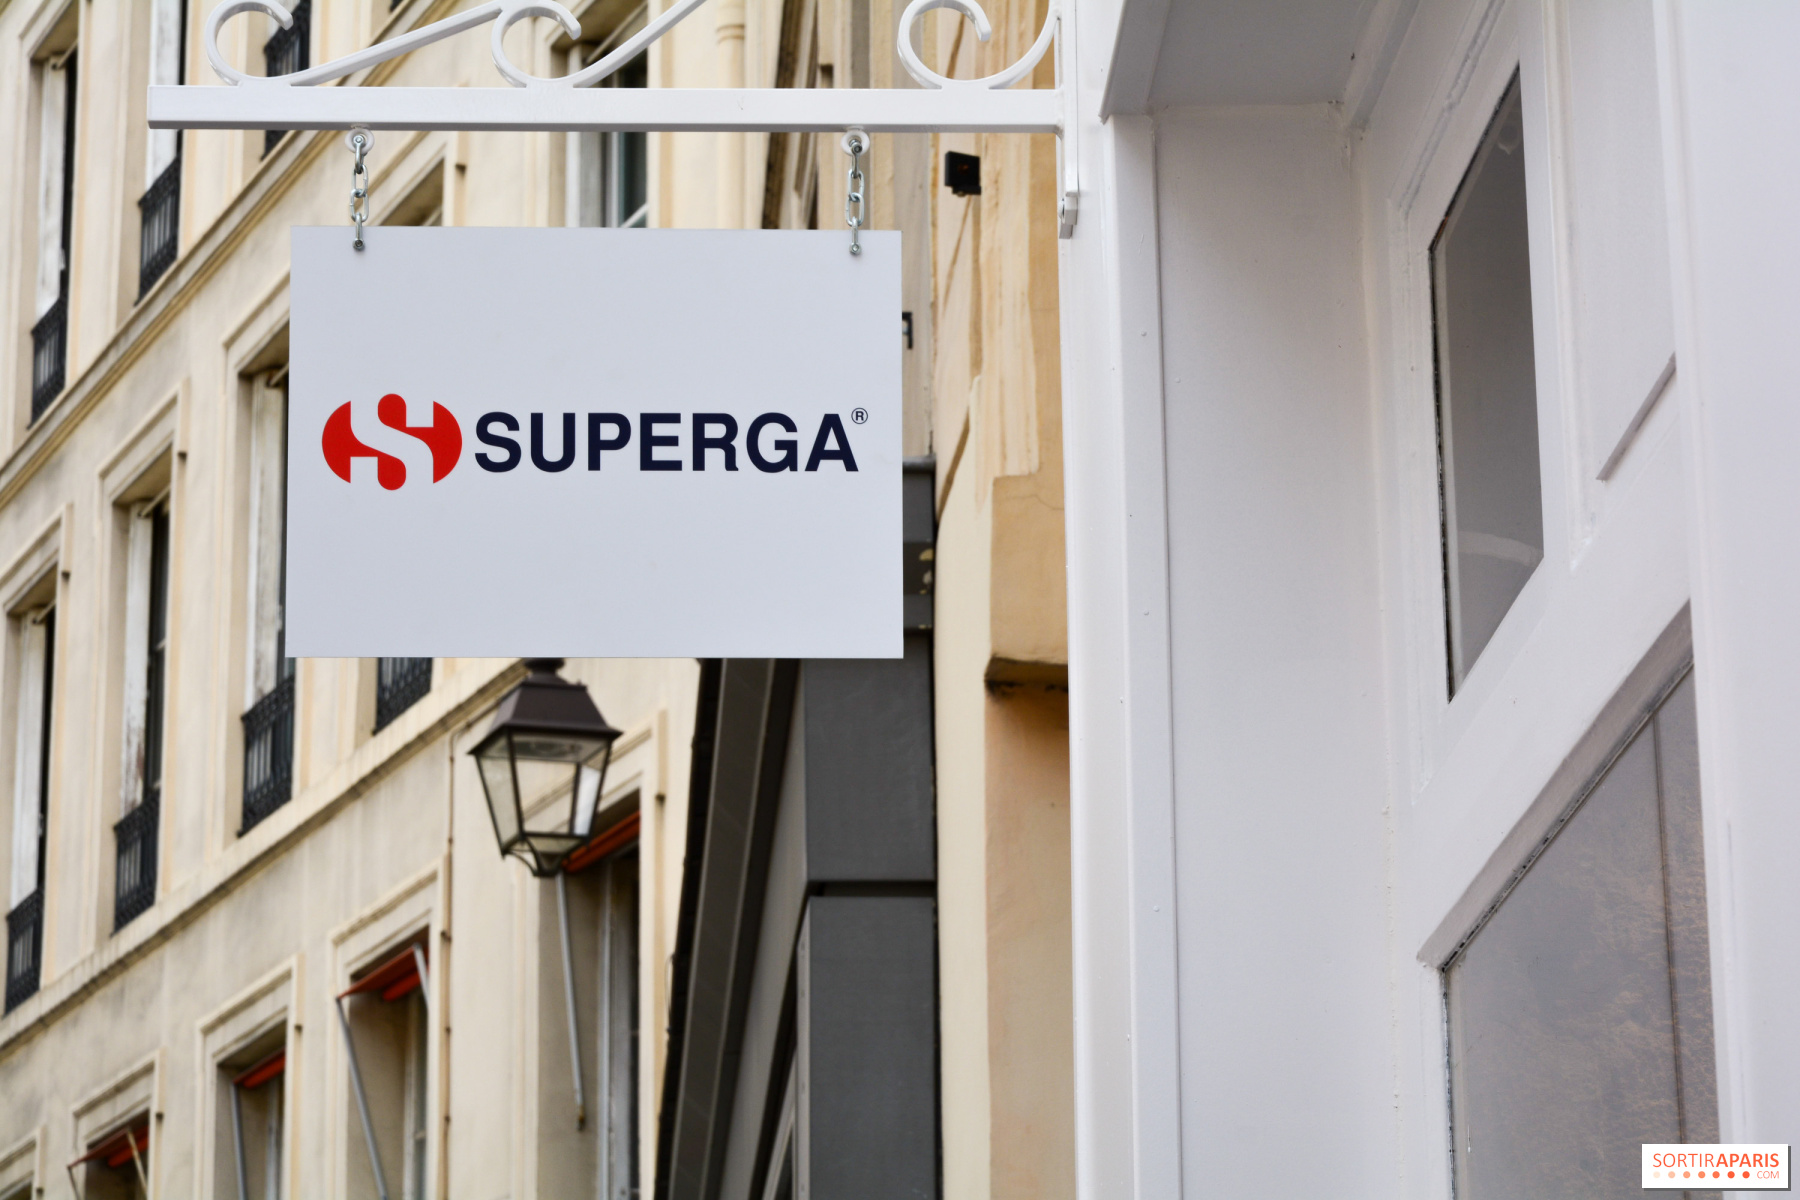 Ouverture de la première boutique Superga à Paris - Sortiraparis.com